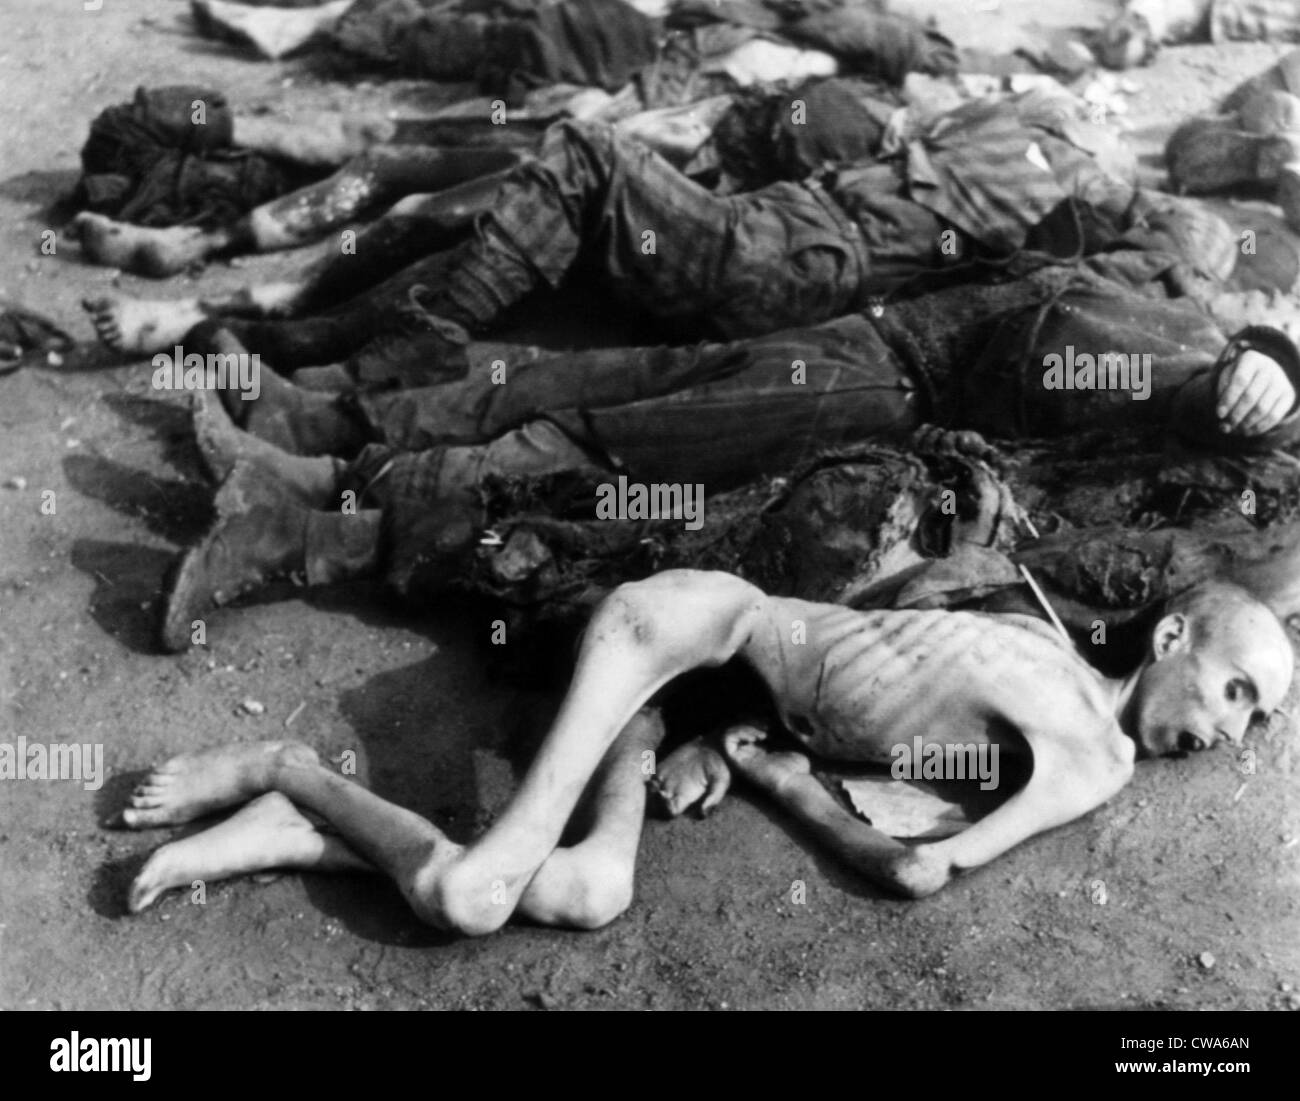 Toten Gefangenen gefunden bei Nordhausen Concentraton Camp, 1945. Höflichkeit: CSU Archive/Everett Collection Stockfoto